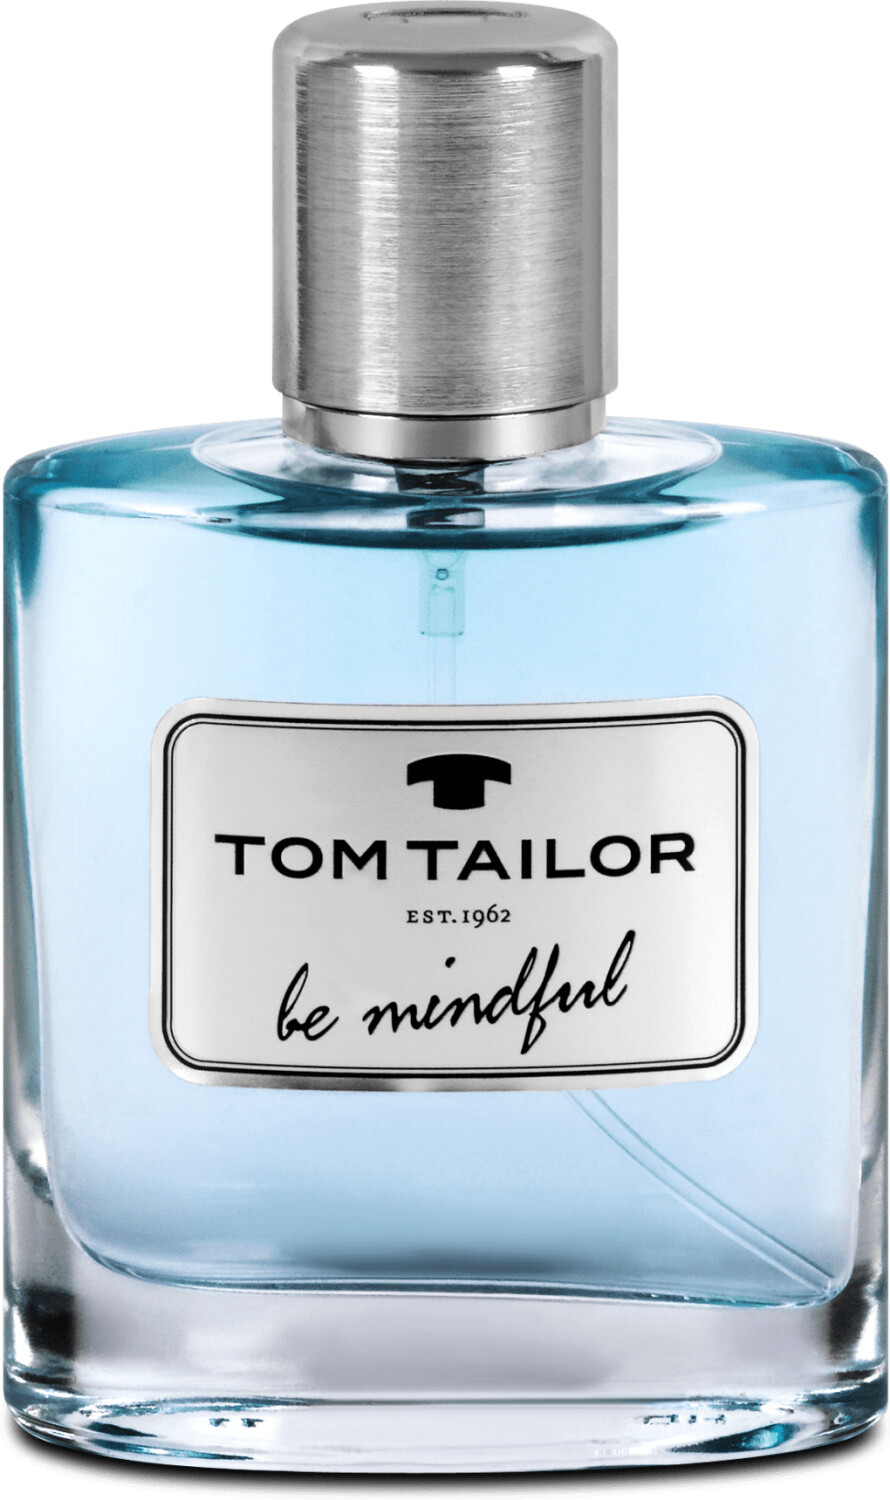 Photos - Men's Fragrance Tom Tailor Be Mindful Man Eau de Toilette  (50ml)